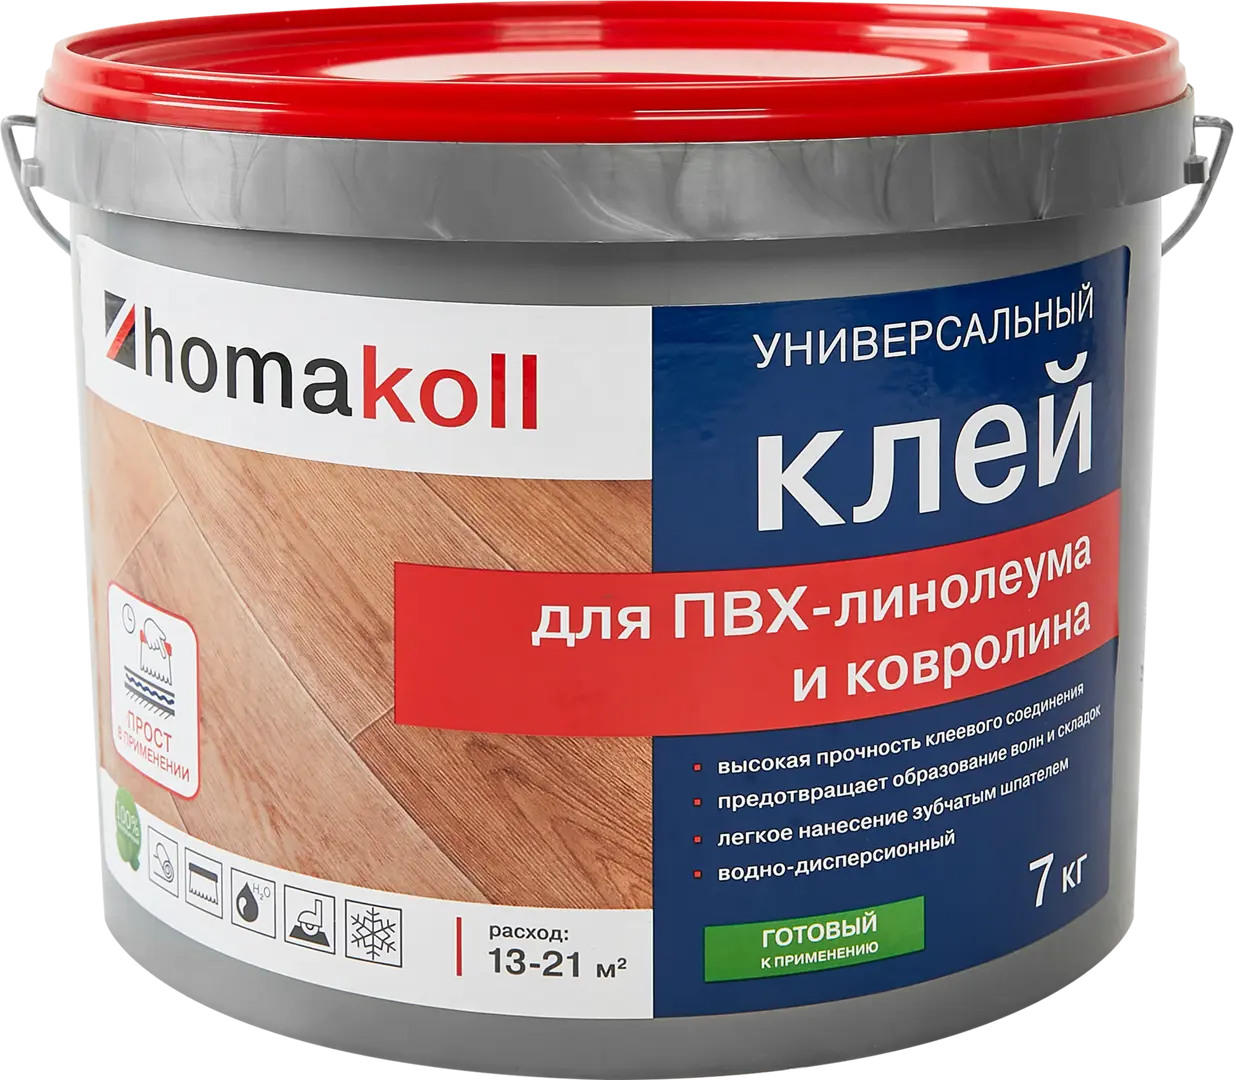 Клей универсальный для линолеума и ковролина Хомакол (Homakoll) 7 кг клей универсальный для линолеума и ковролина tytan 7 кг